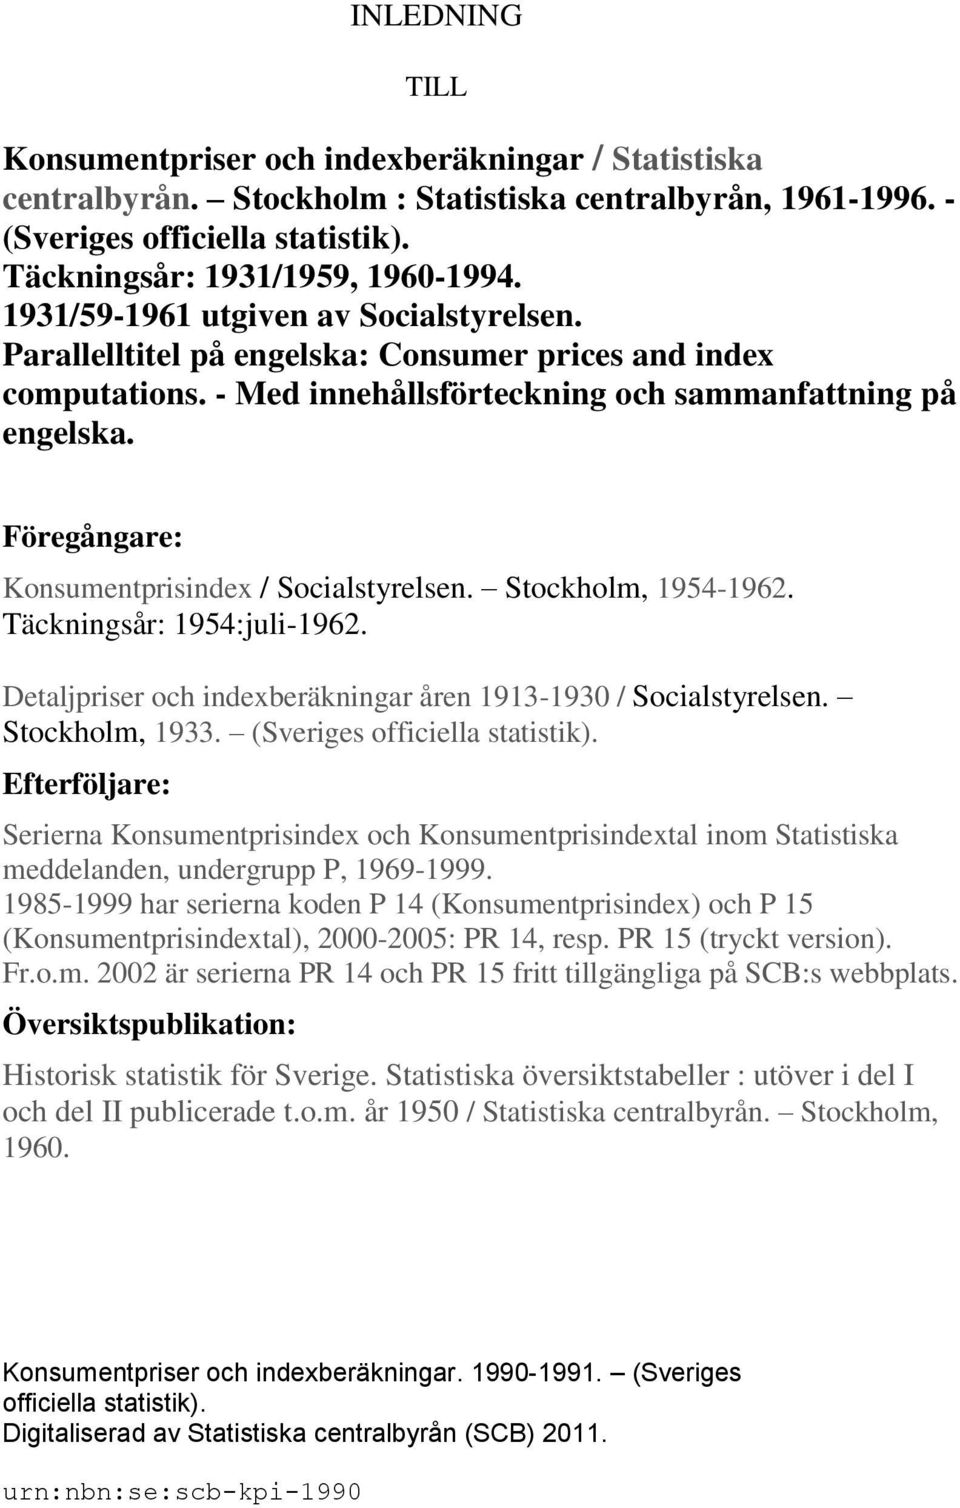 Föregångare: Konsumentprisindex / Socialstyrelsen. Stockholm, 1954-1962. Täckningsår: 1954:juli-1962. Detaljpriser och indexberäkningar åren 1913-1930 / Socialstyrelsen. Stockholm, 1933.